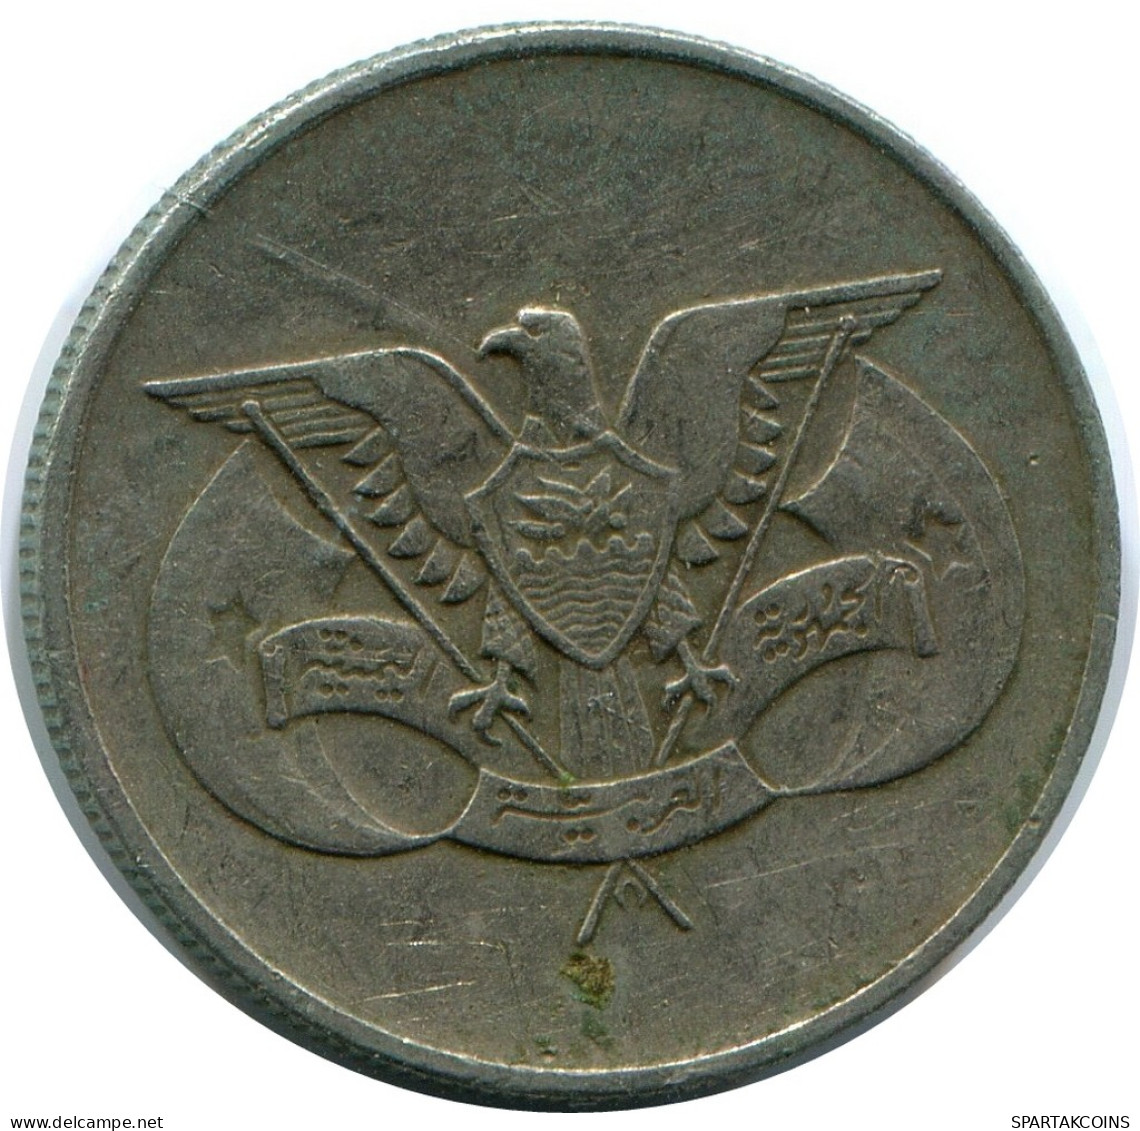 25 FILS 1979 YEMEN Islamic Coin #AP483.U - Jemen